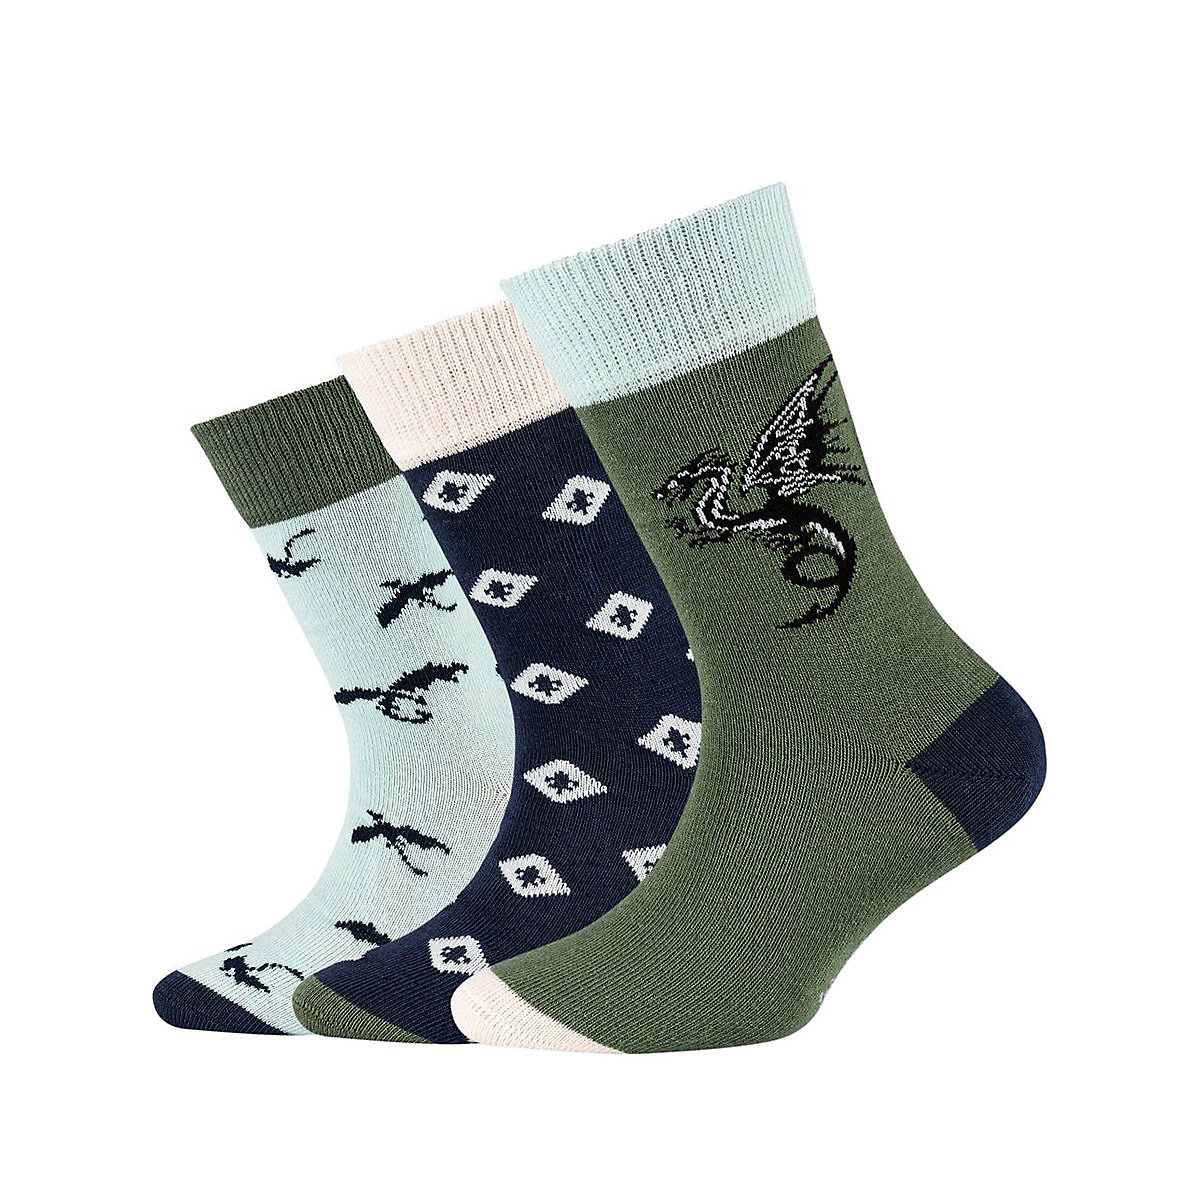 s.Oliver Kinder Socken 3er Pack Junior Unisex Animal Bio-Baumwolle Socken für Kinder grün